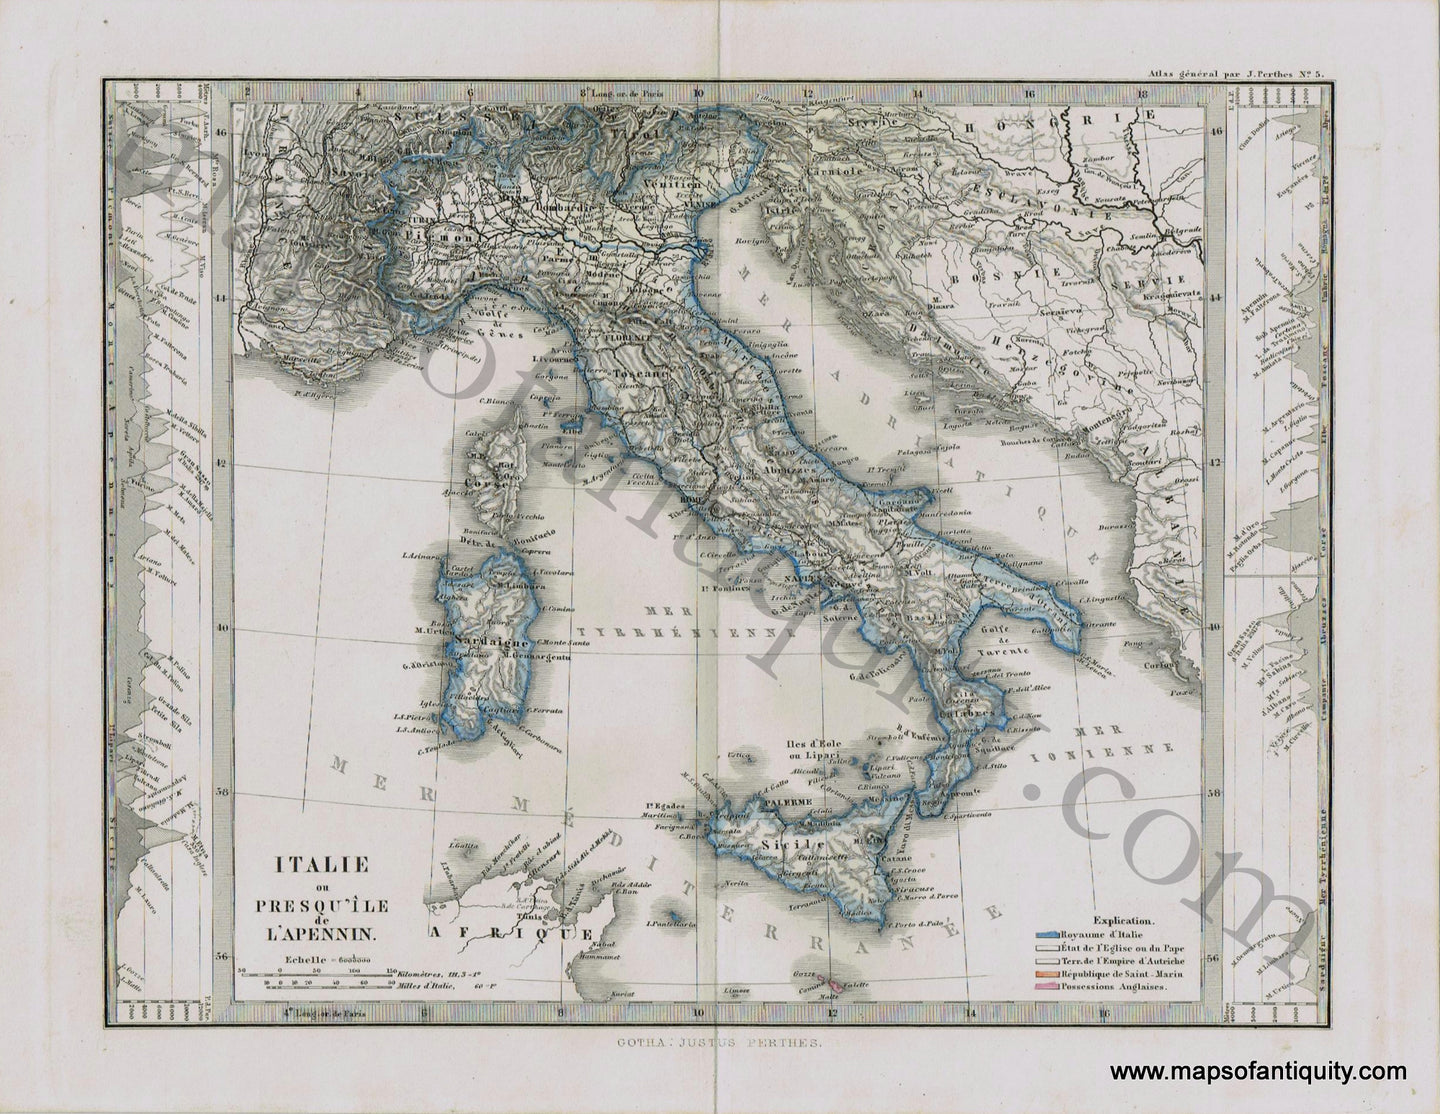 Italy-Italie-ou-Presqu'ile-de-l'Apennin-Perthes-1871-Antique-Map-1870s-1800s-19th-century-Maps-of-Antiquity